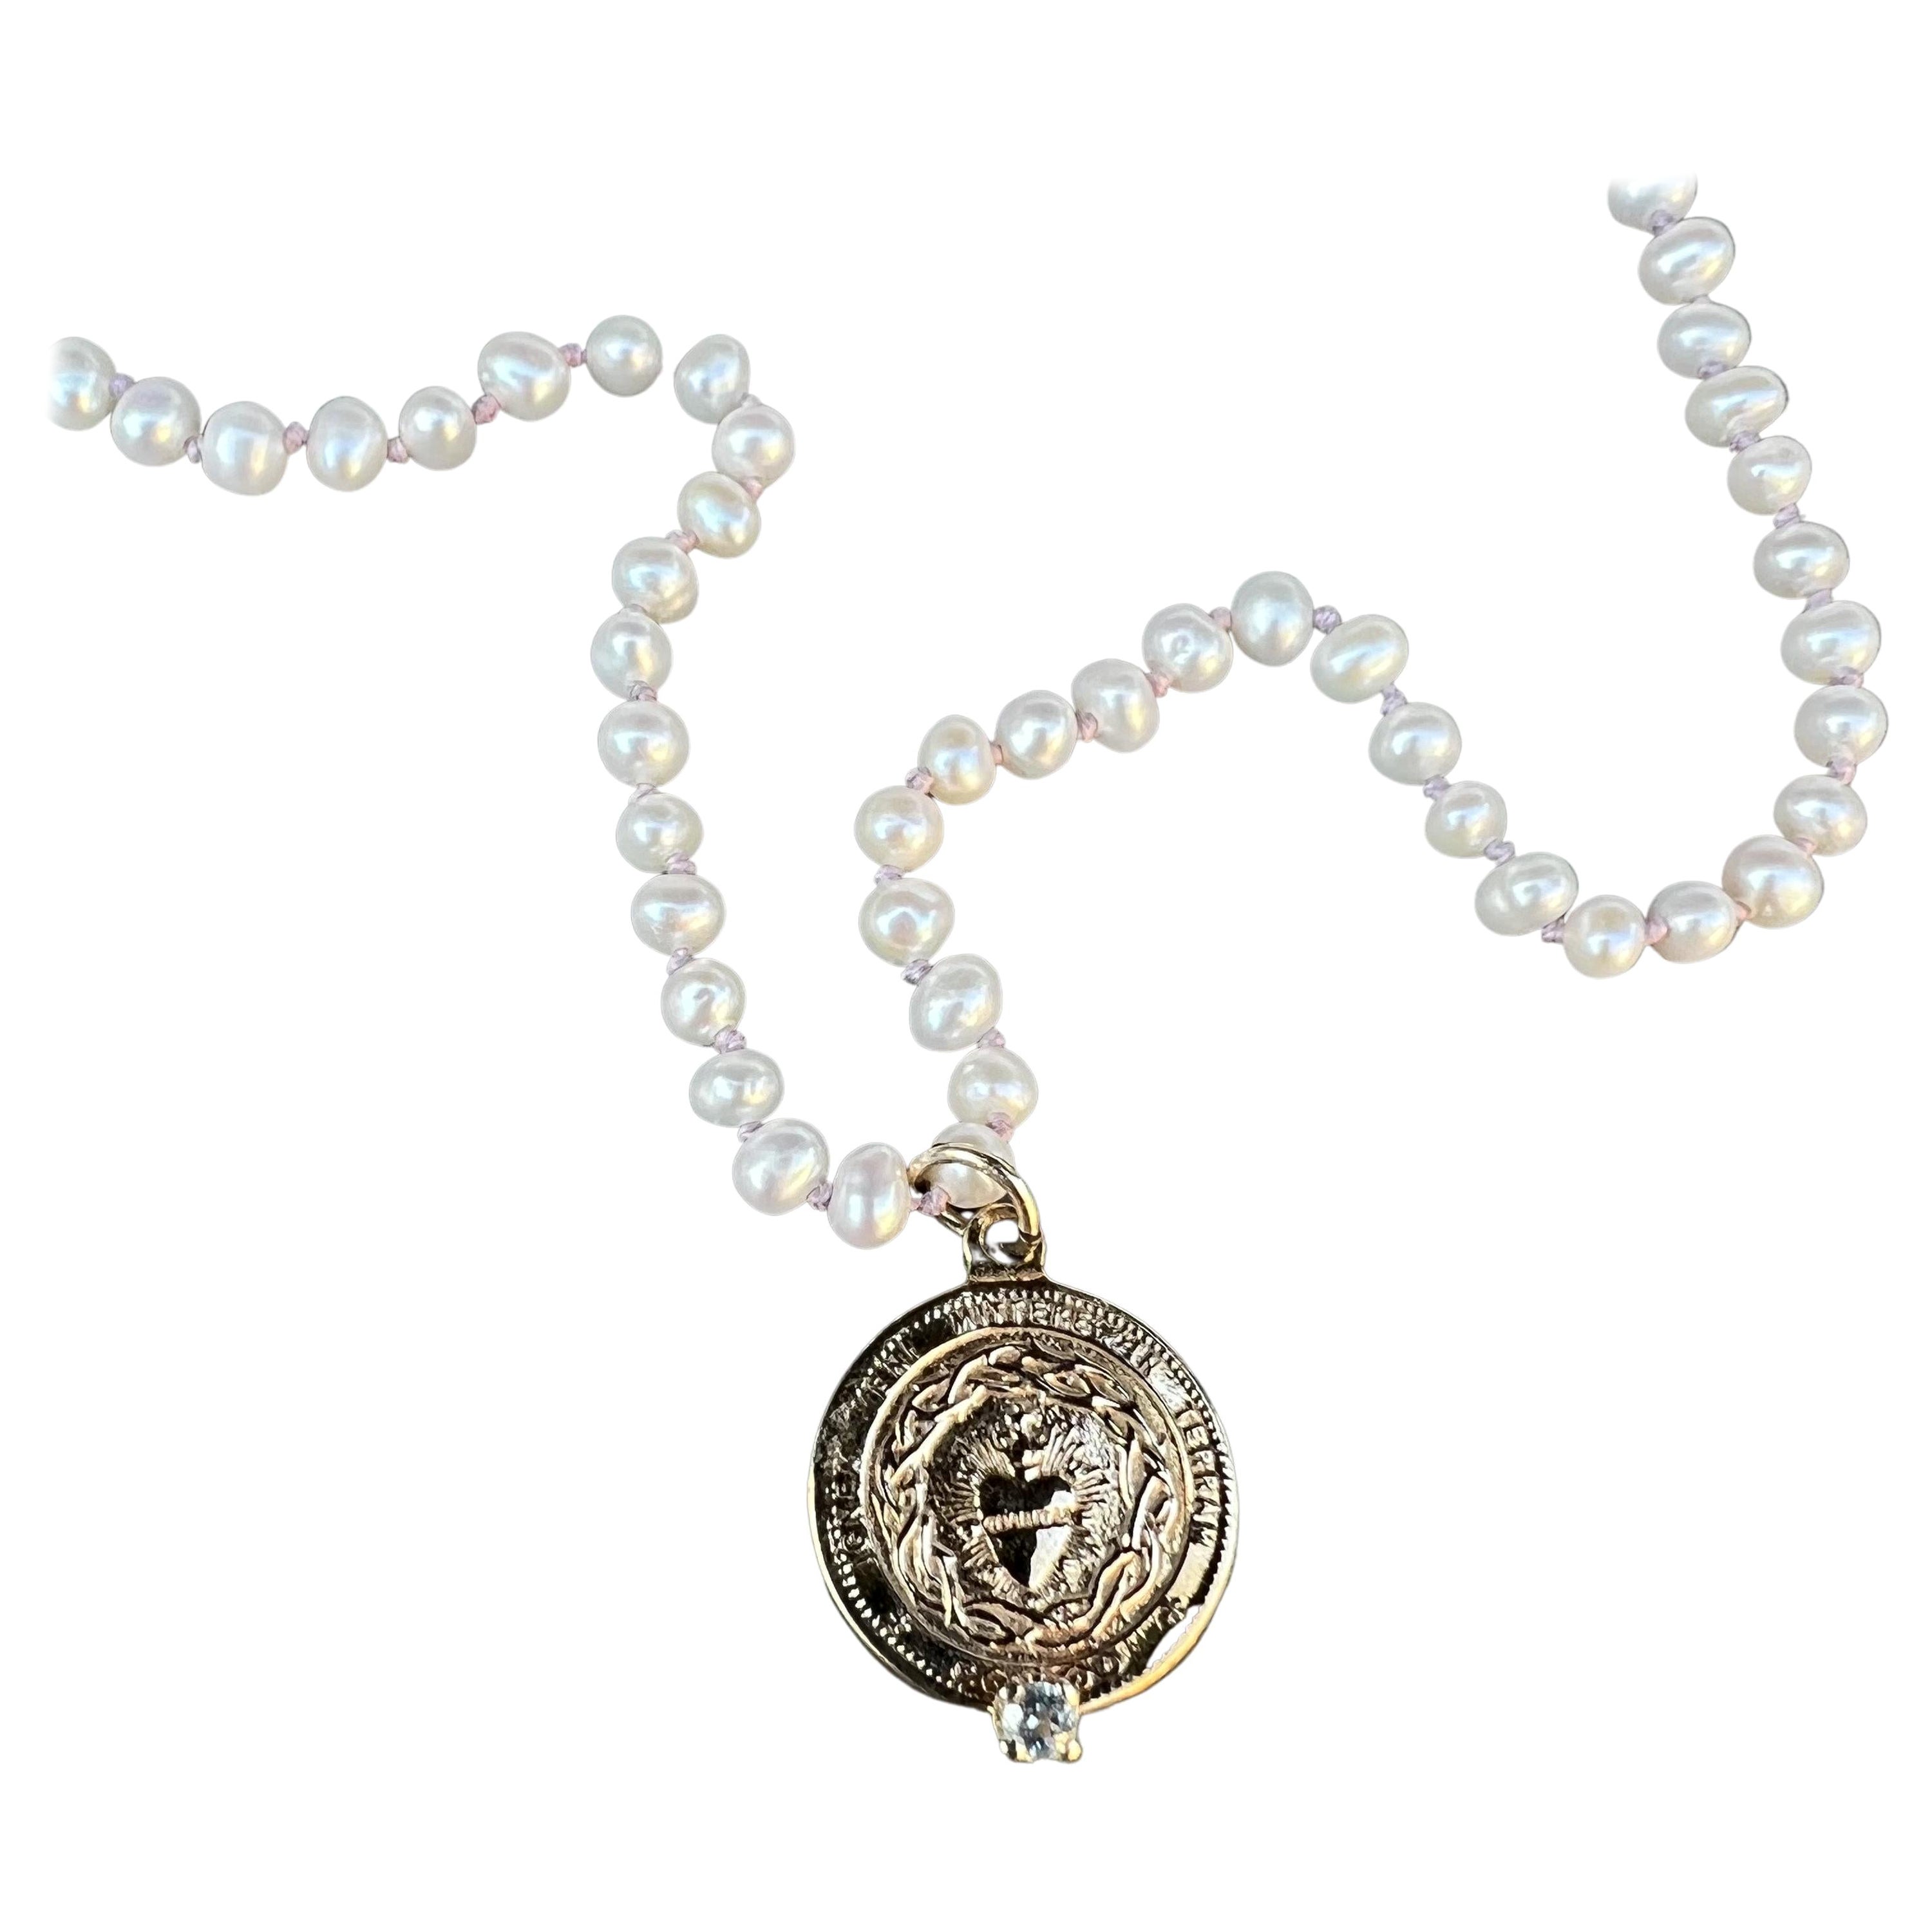 Weißes Perlenhalsband mit schwarzen Edelsteinen und Aquamarin-Herzmedaille aus Bronze J DAUPHIN
18